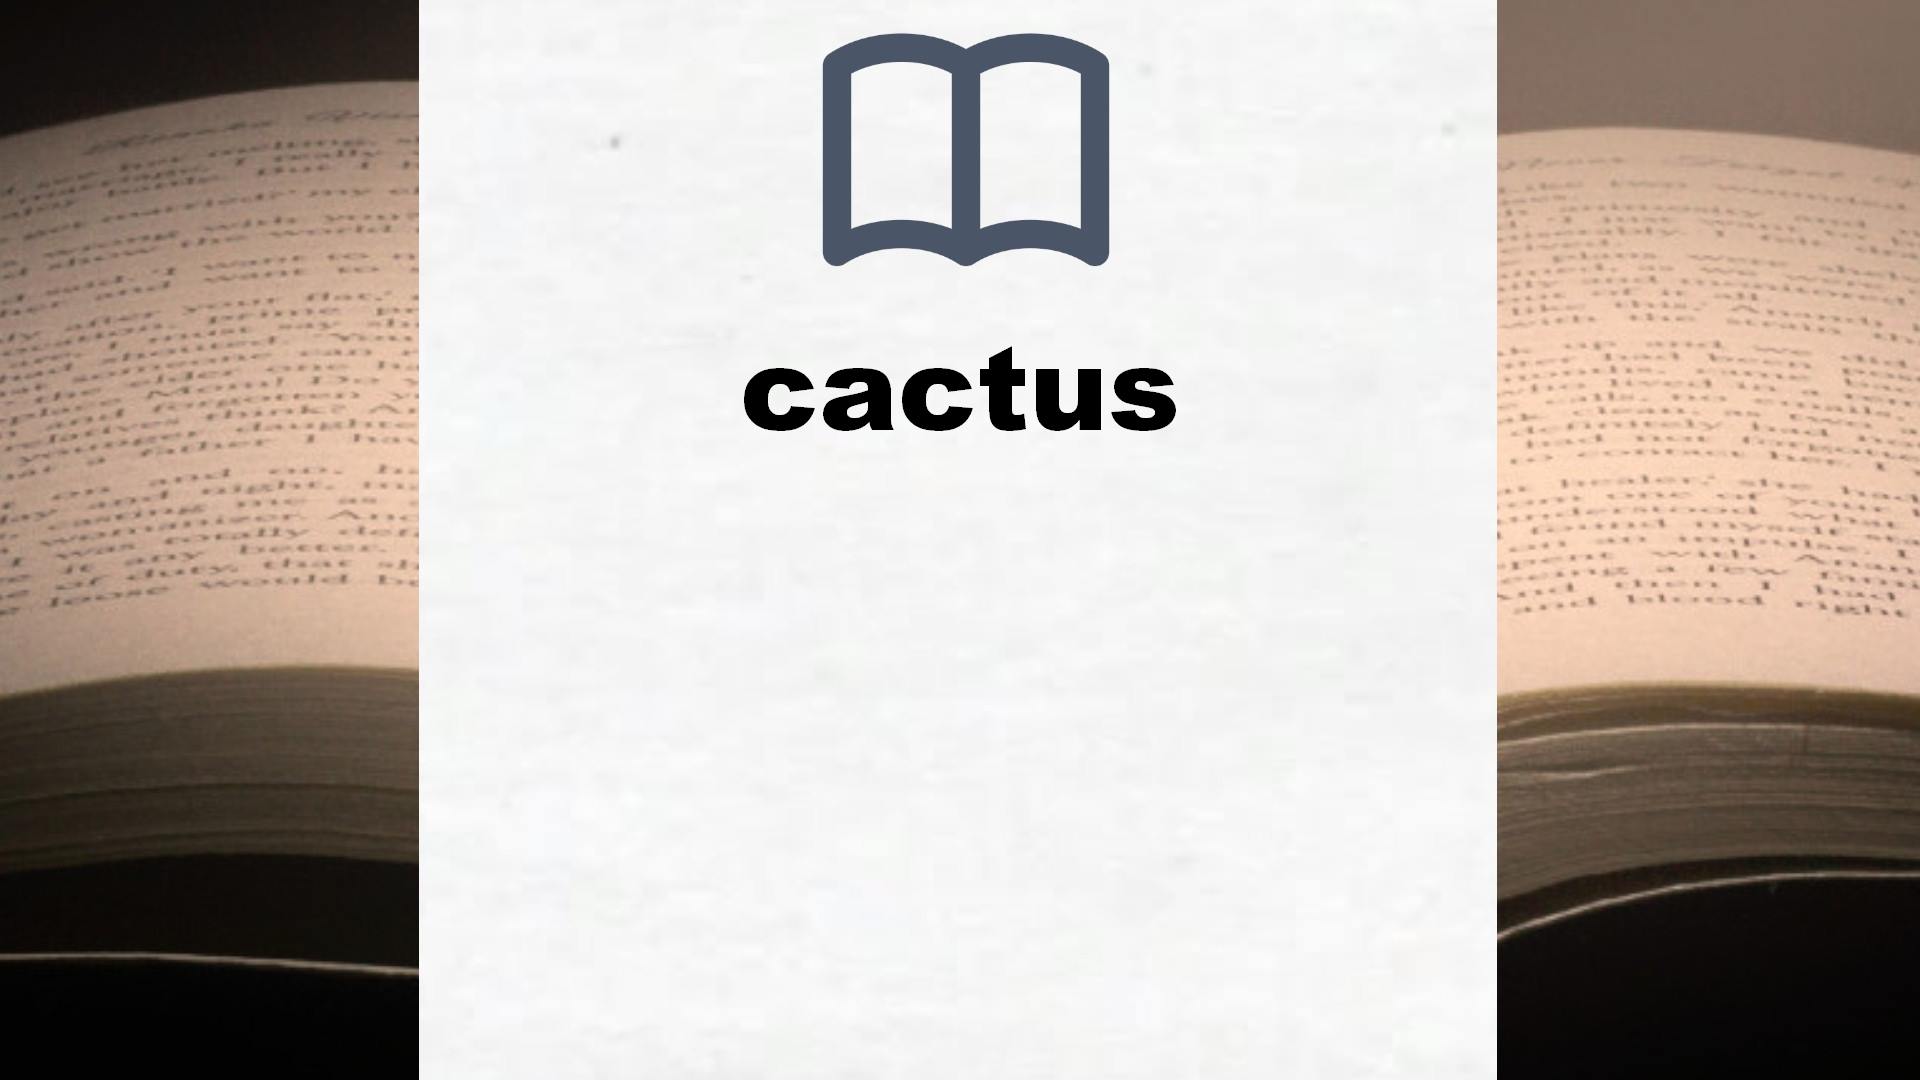 Libros sobre cactus